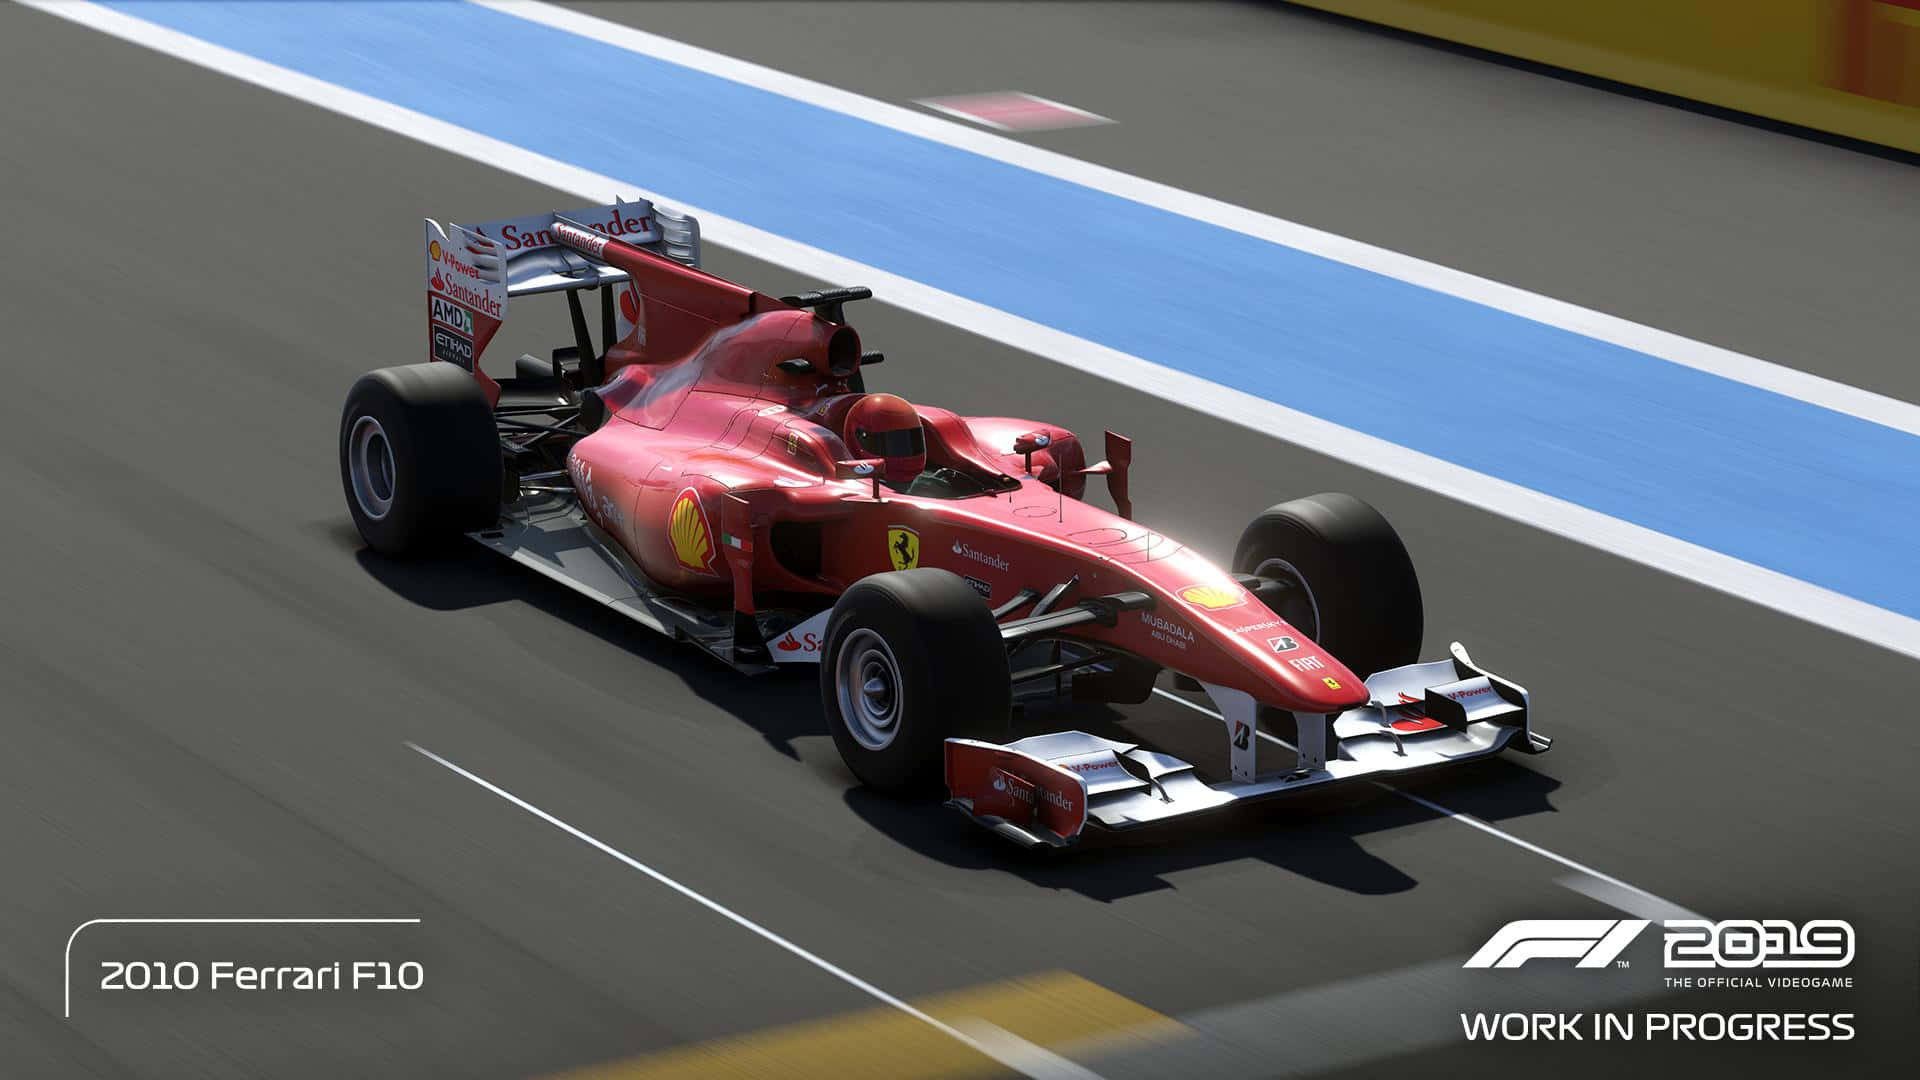 Perfeccionael Arte De Las Carreras Y Toma La Bandera A Cuadros En El Juego De Fórmula 1. Fondo de pantalla